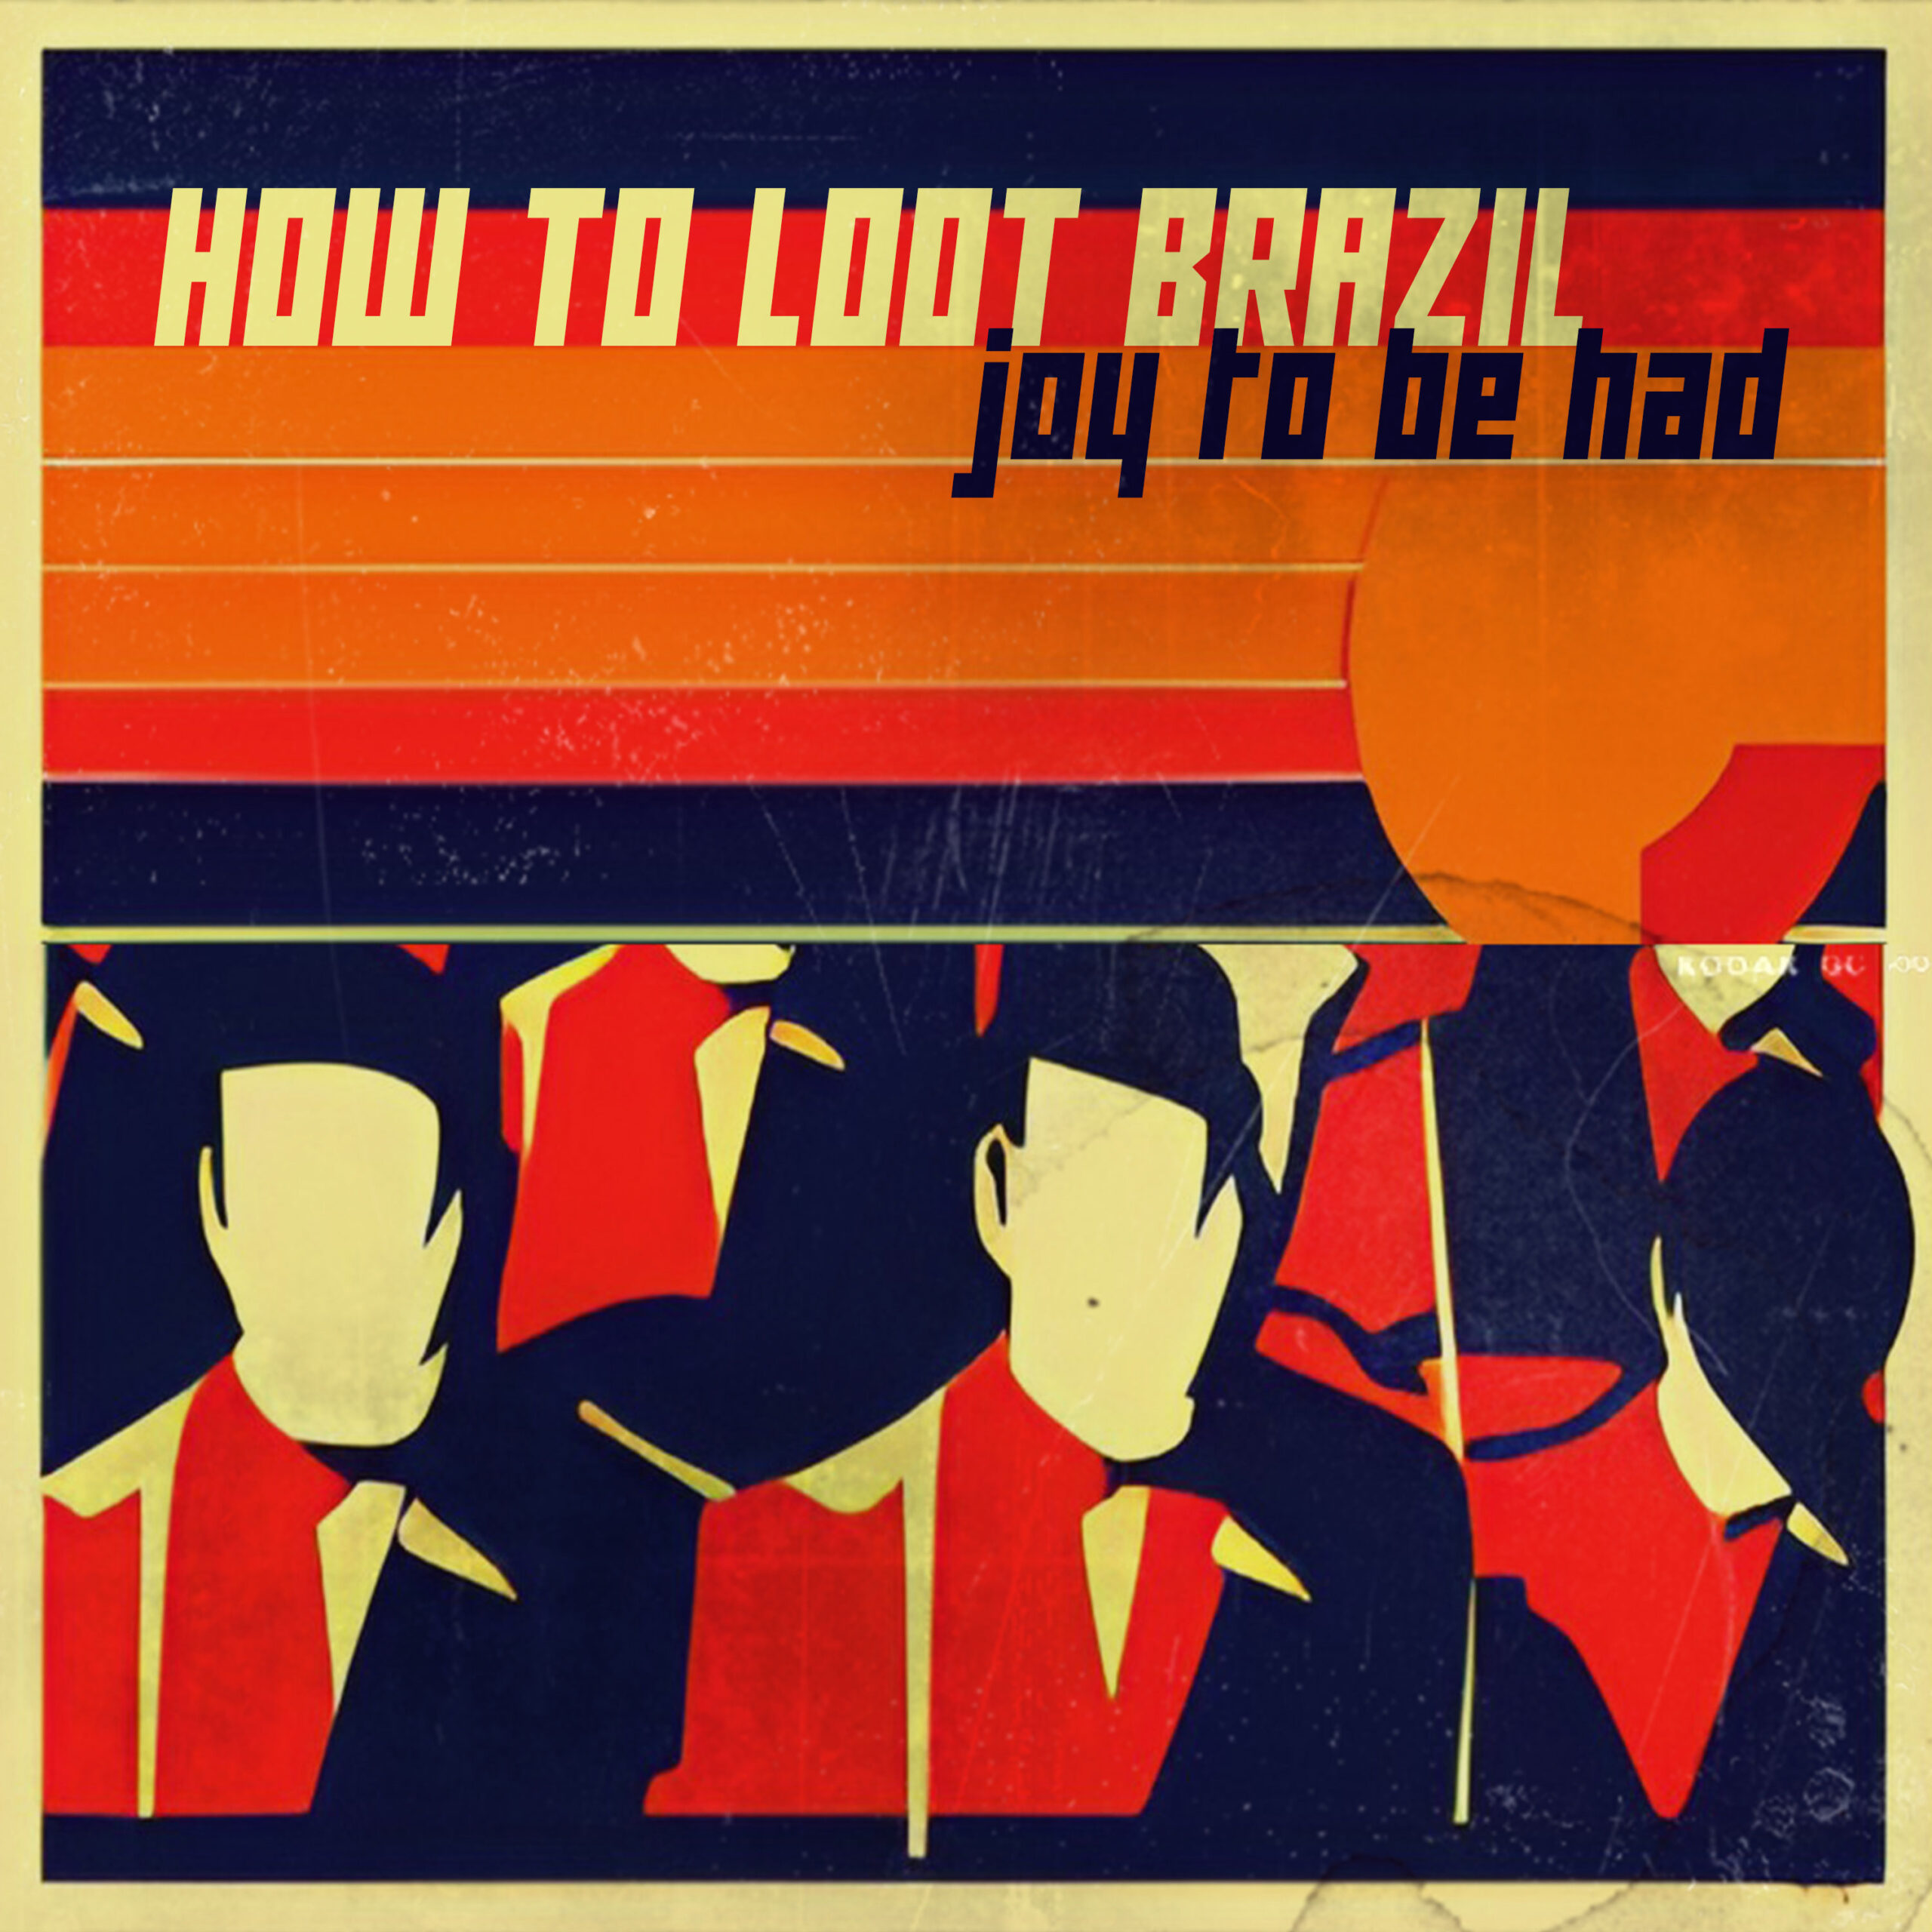  “Joy To Be Had”: El noveno álbum de How To Loot Brazil, Indie-Electro-Pop-Post-Punk Alemán